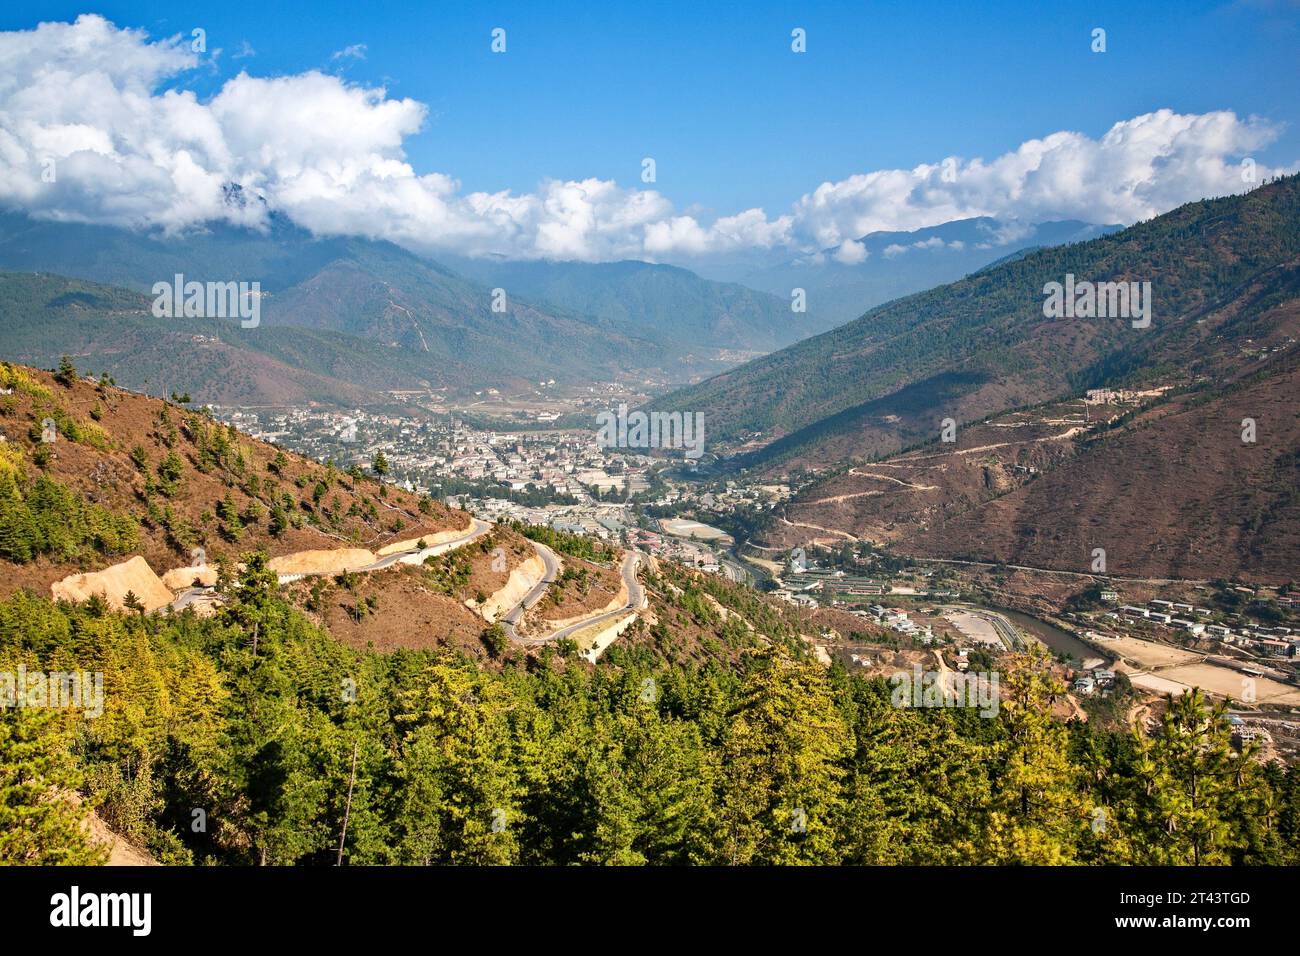 Une route serpente dans la vallée où la plus grande ville du Bhoutan, Thimphu, s'étend à la base des contreforts de l'Himalaya. Banque D'Images